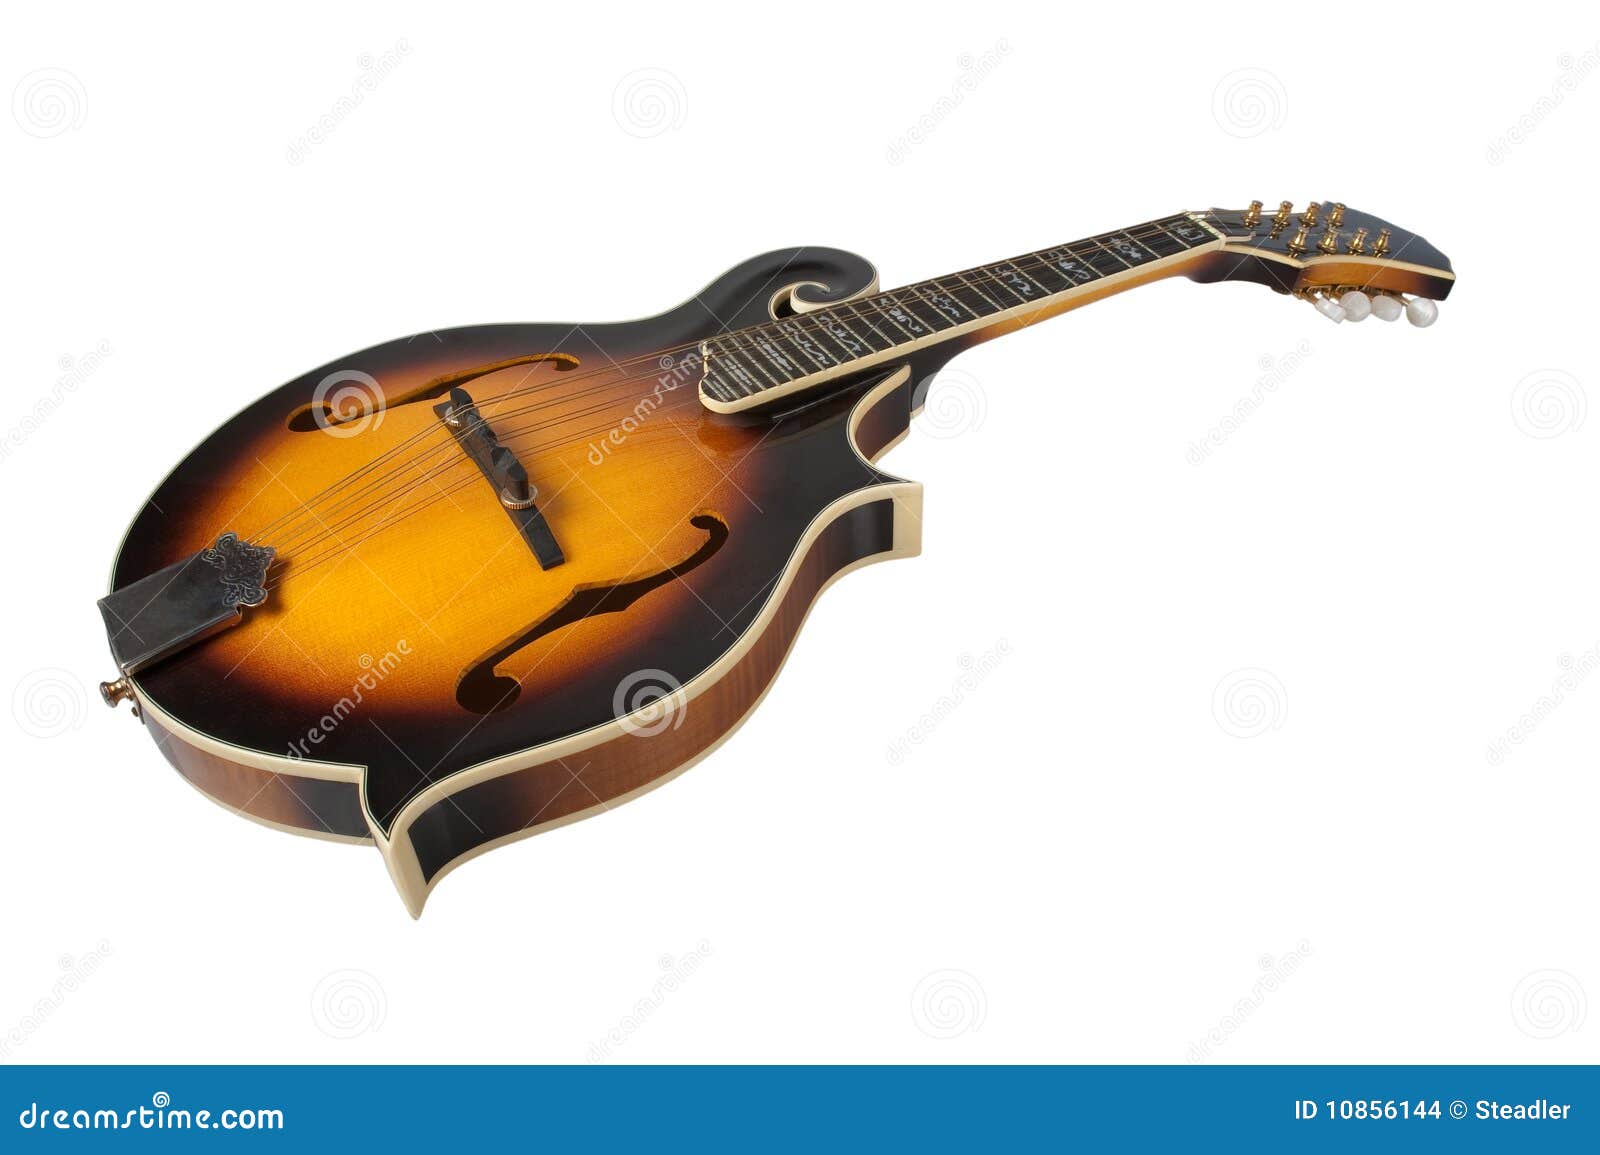 bluegrass mandolin  on white